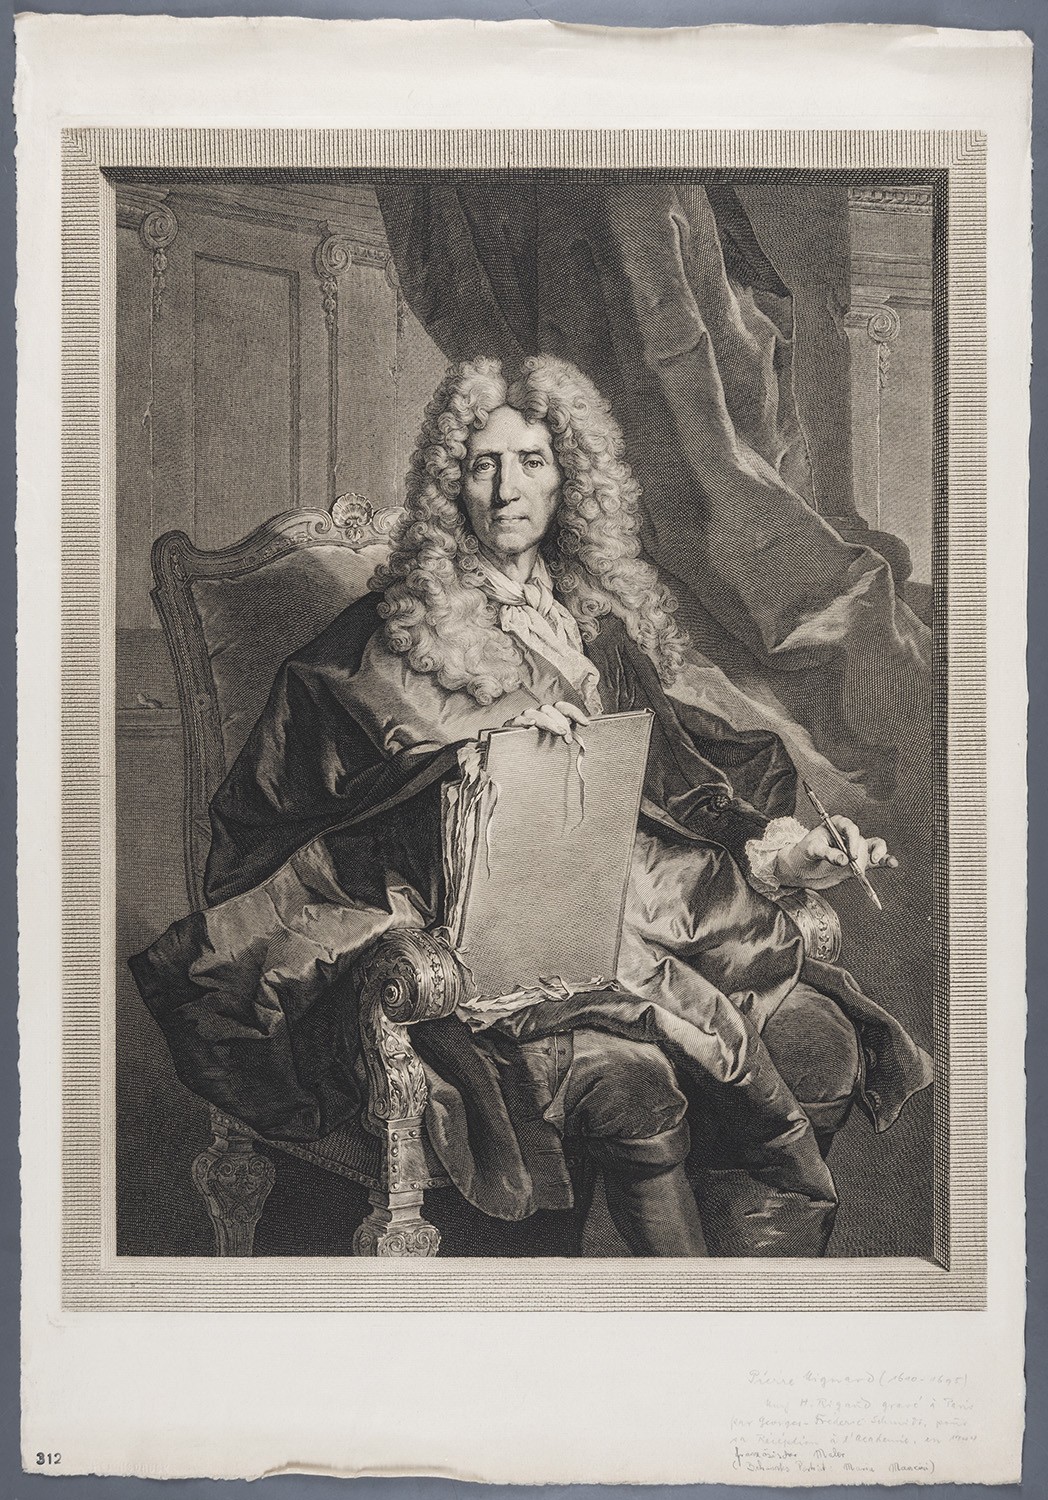 Mignard, Pierre (1610-1695), französ. Porträtmaler (Landesgeschichtliche Vereinigung für die Mark Brandenburg e.V., Archiv CC BY)